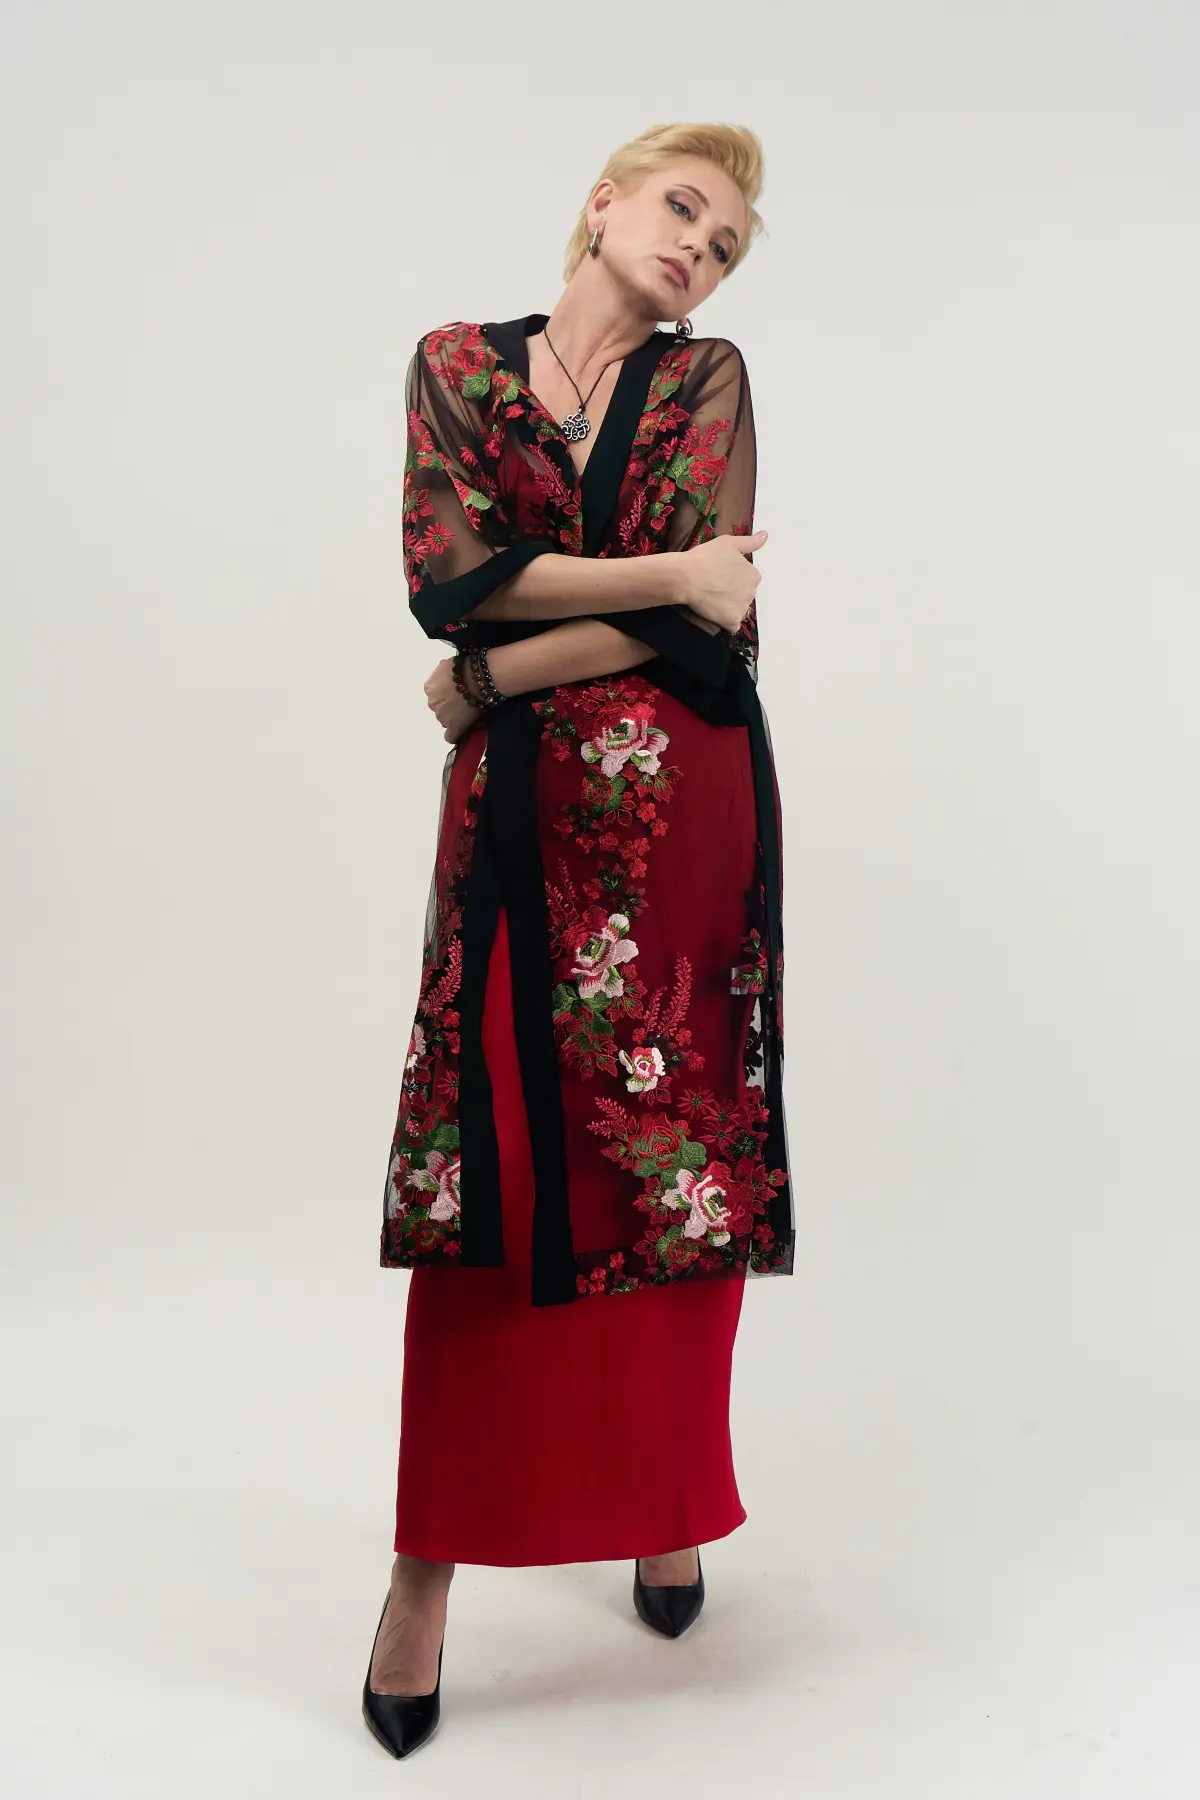 Кимоно длинное с вышивкой гладью красных цветов на черной сетке и отделкой из шелка